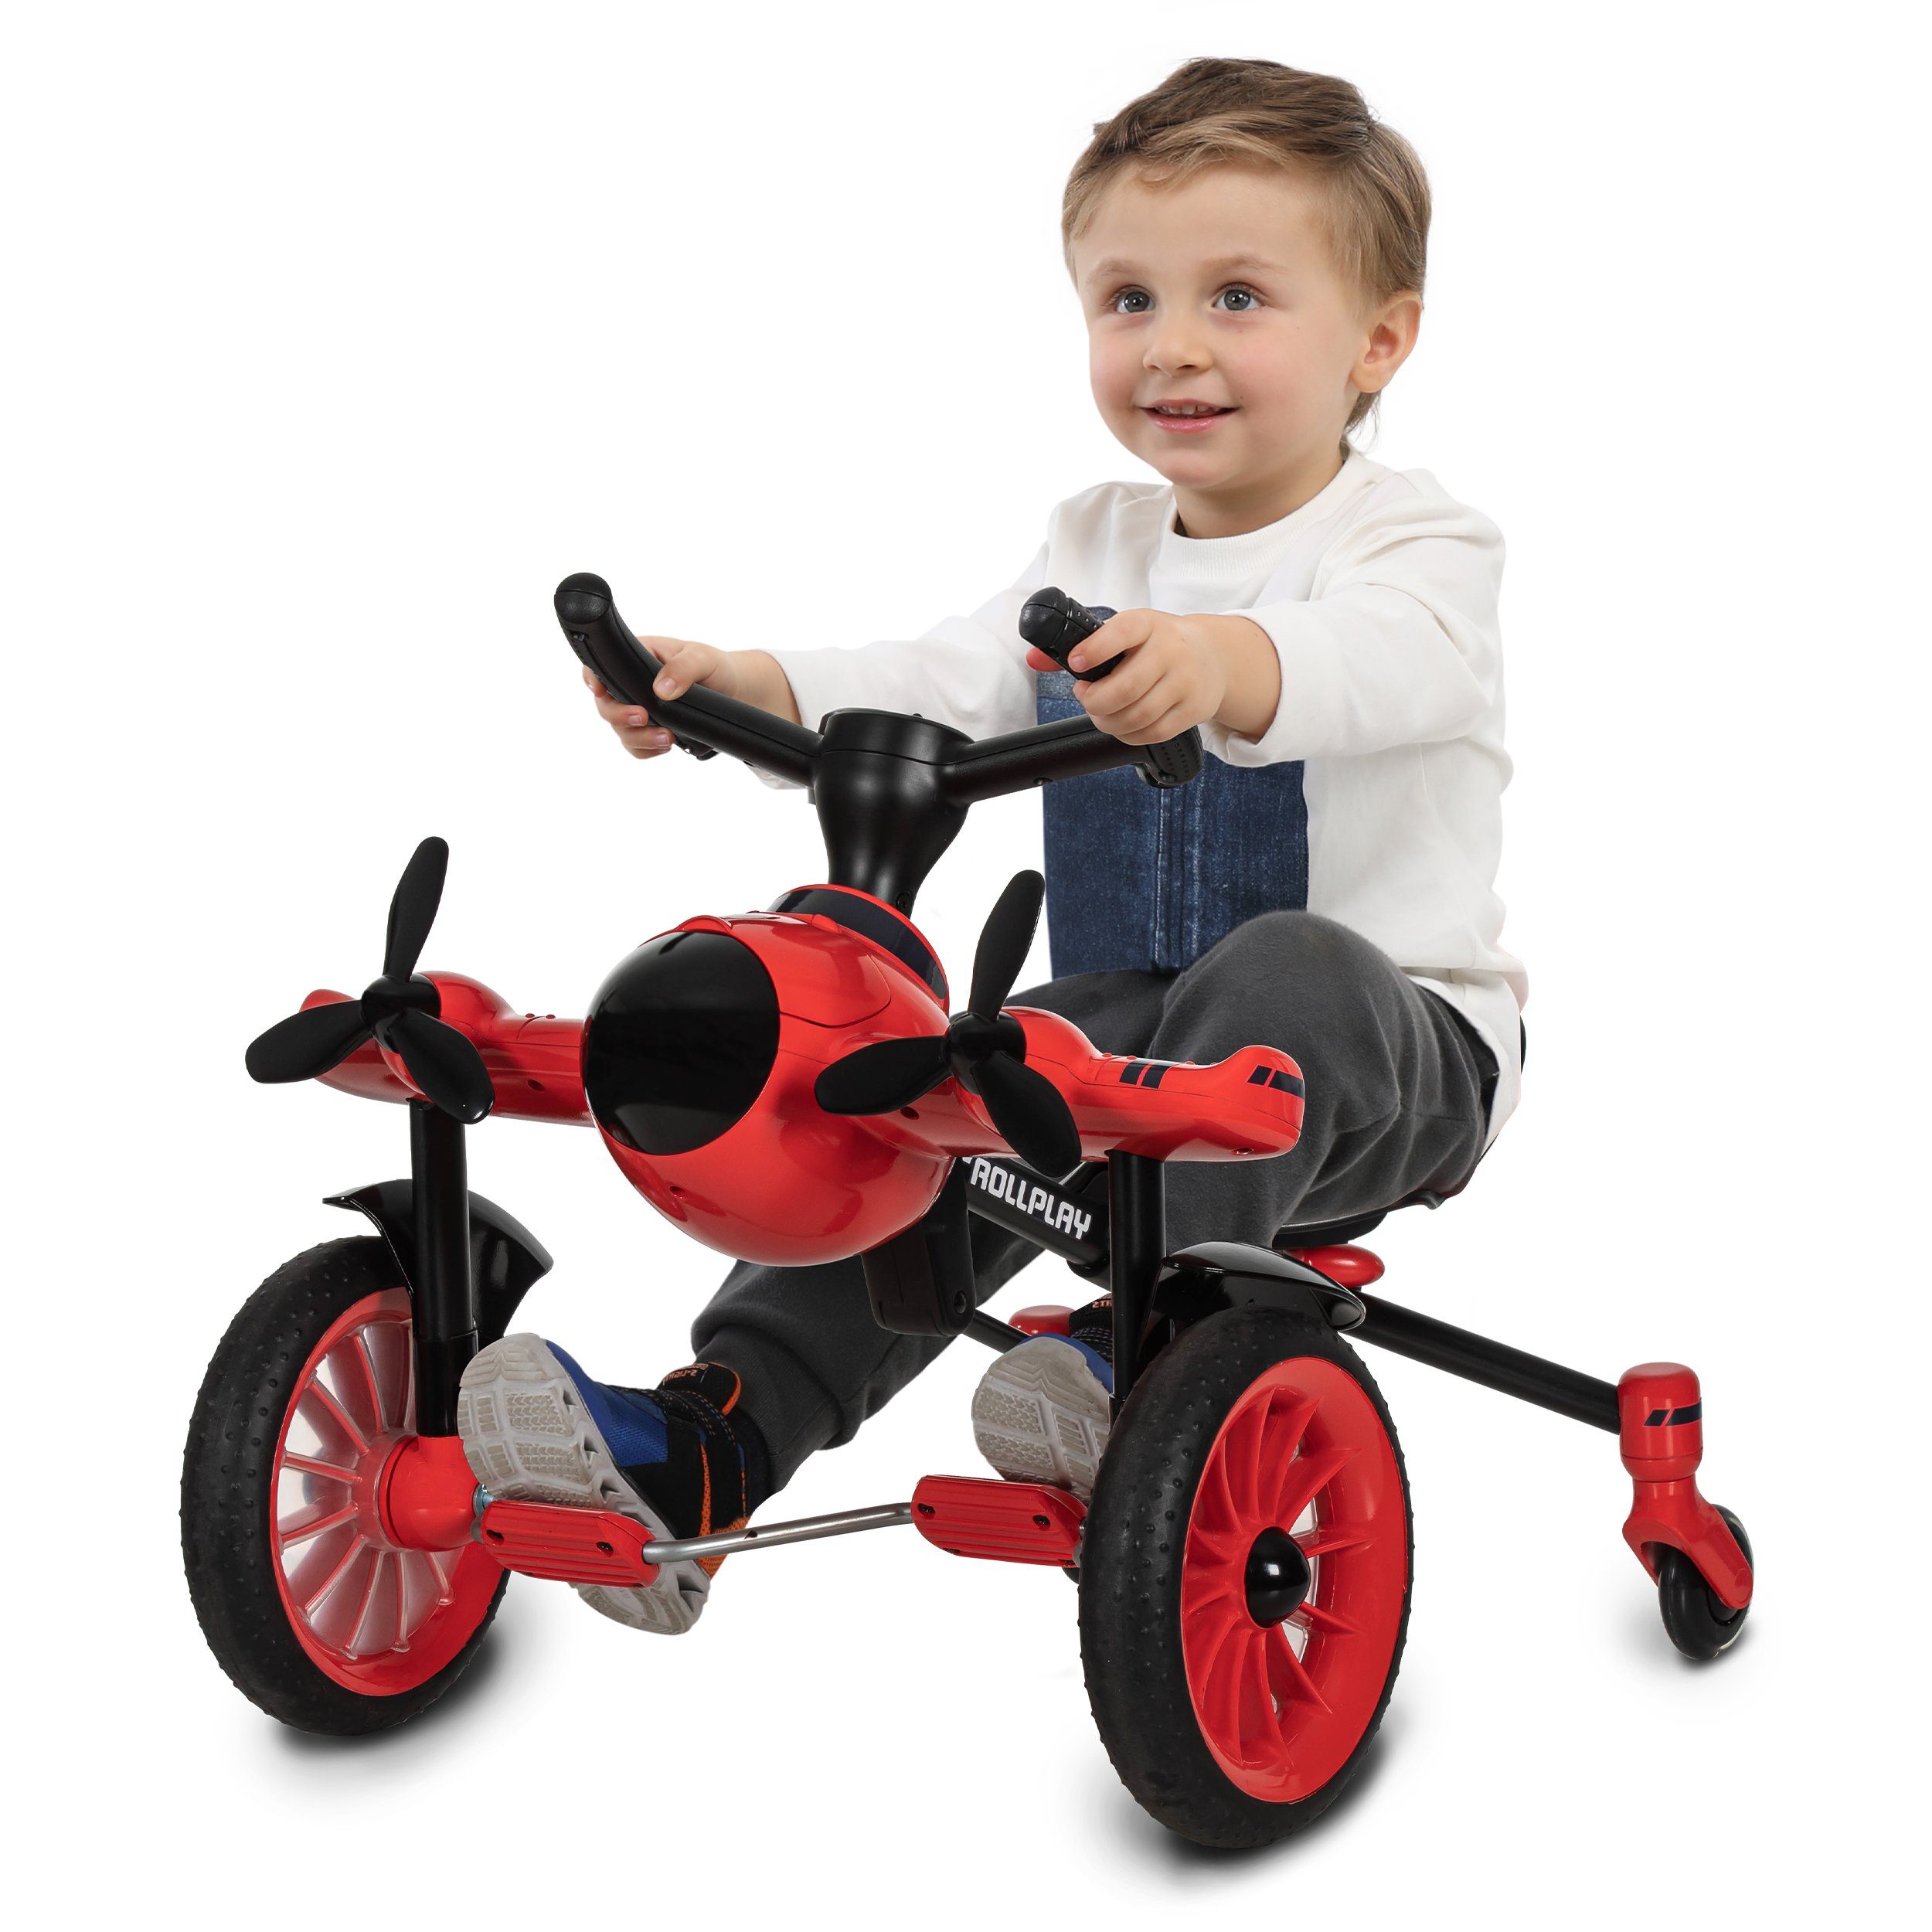 Drifter ROLLPLAY Flex Rollplay Pedal Kinderfahrzeug / Tretfahrzeug Tretfahrzeug